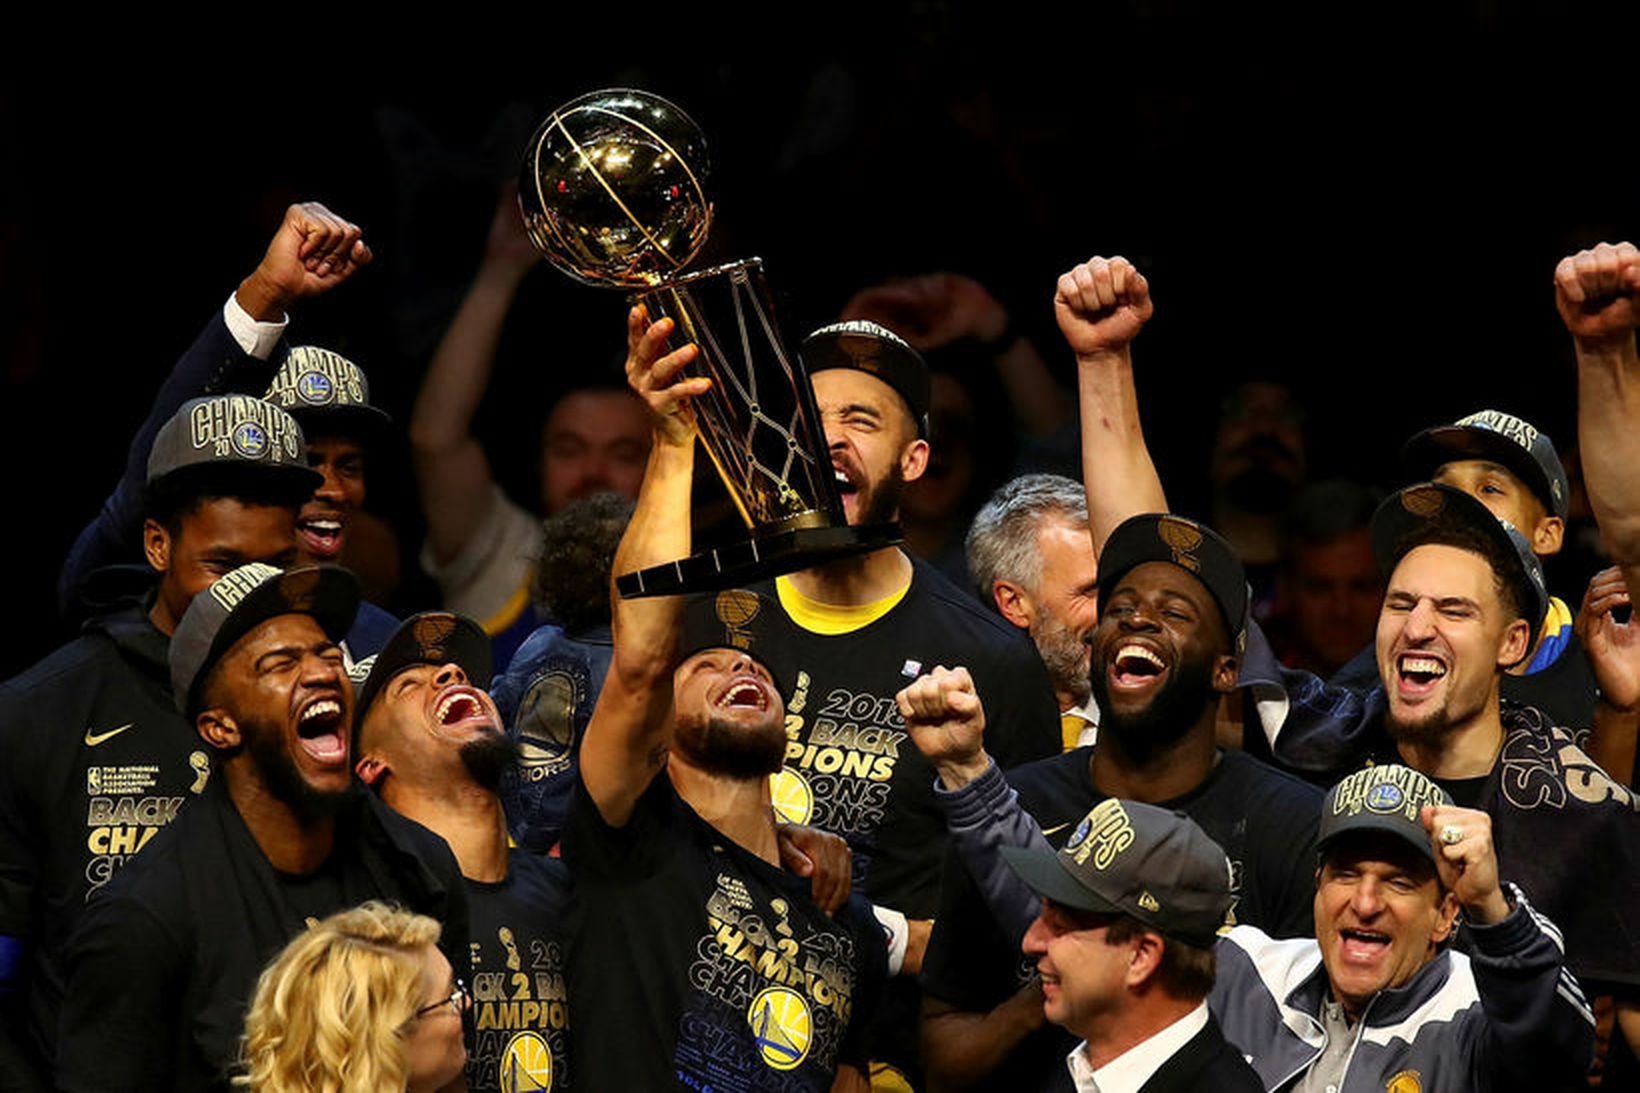 Leikmenn Golden State Warriors fagna sigri í NBA-deildinni í júní.